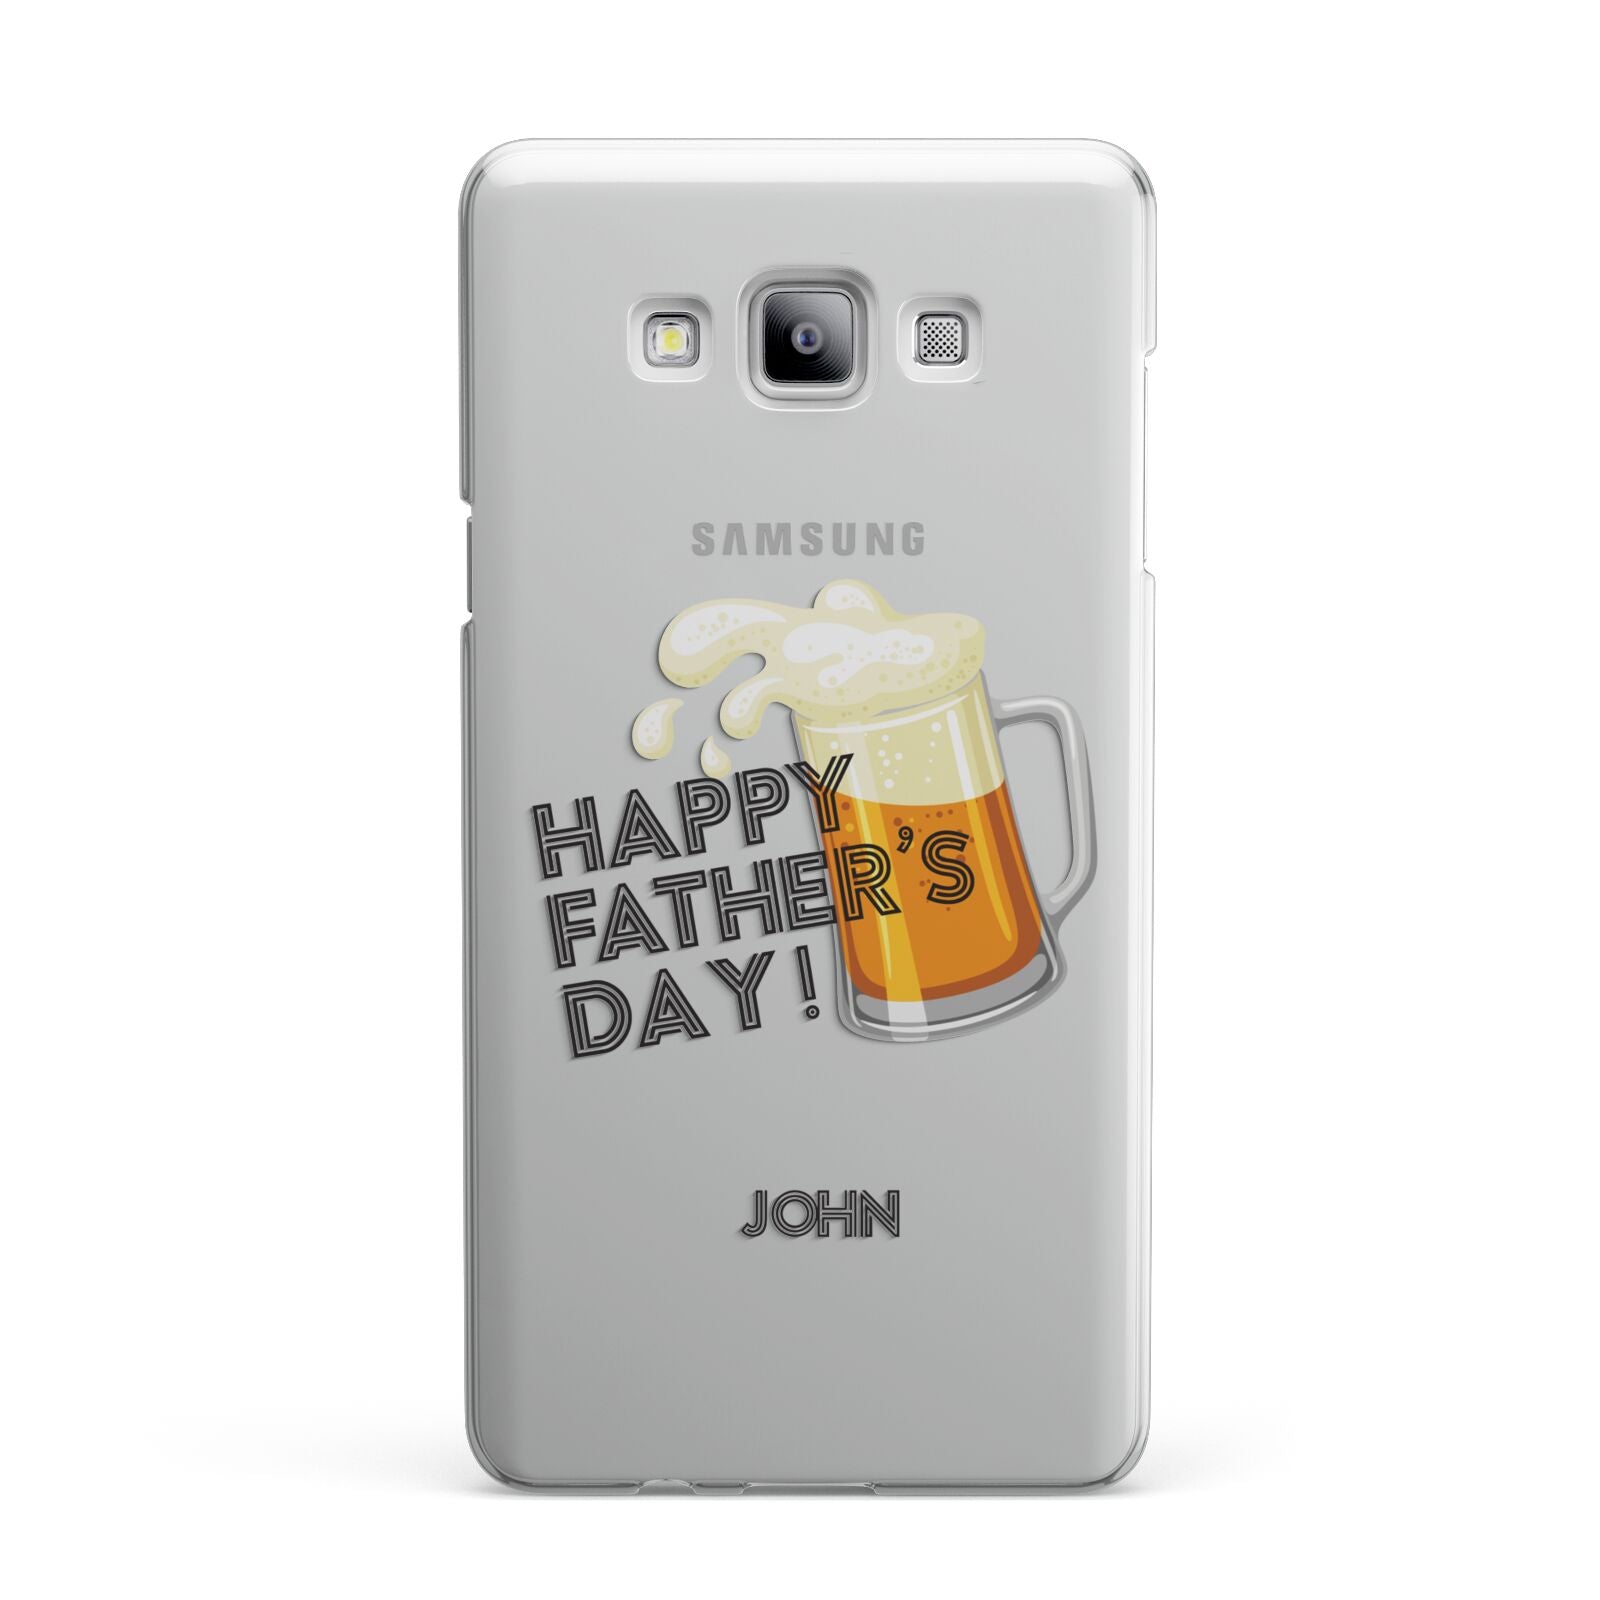 Fathers Day Custom Samsung Galaxy A7 2015 Case